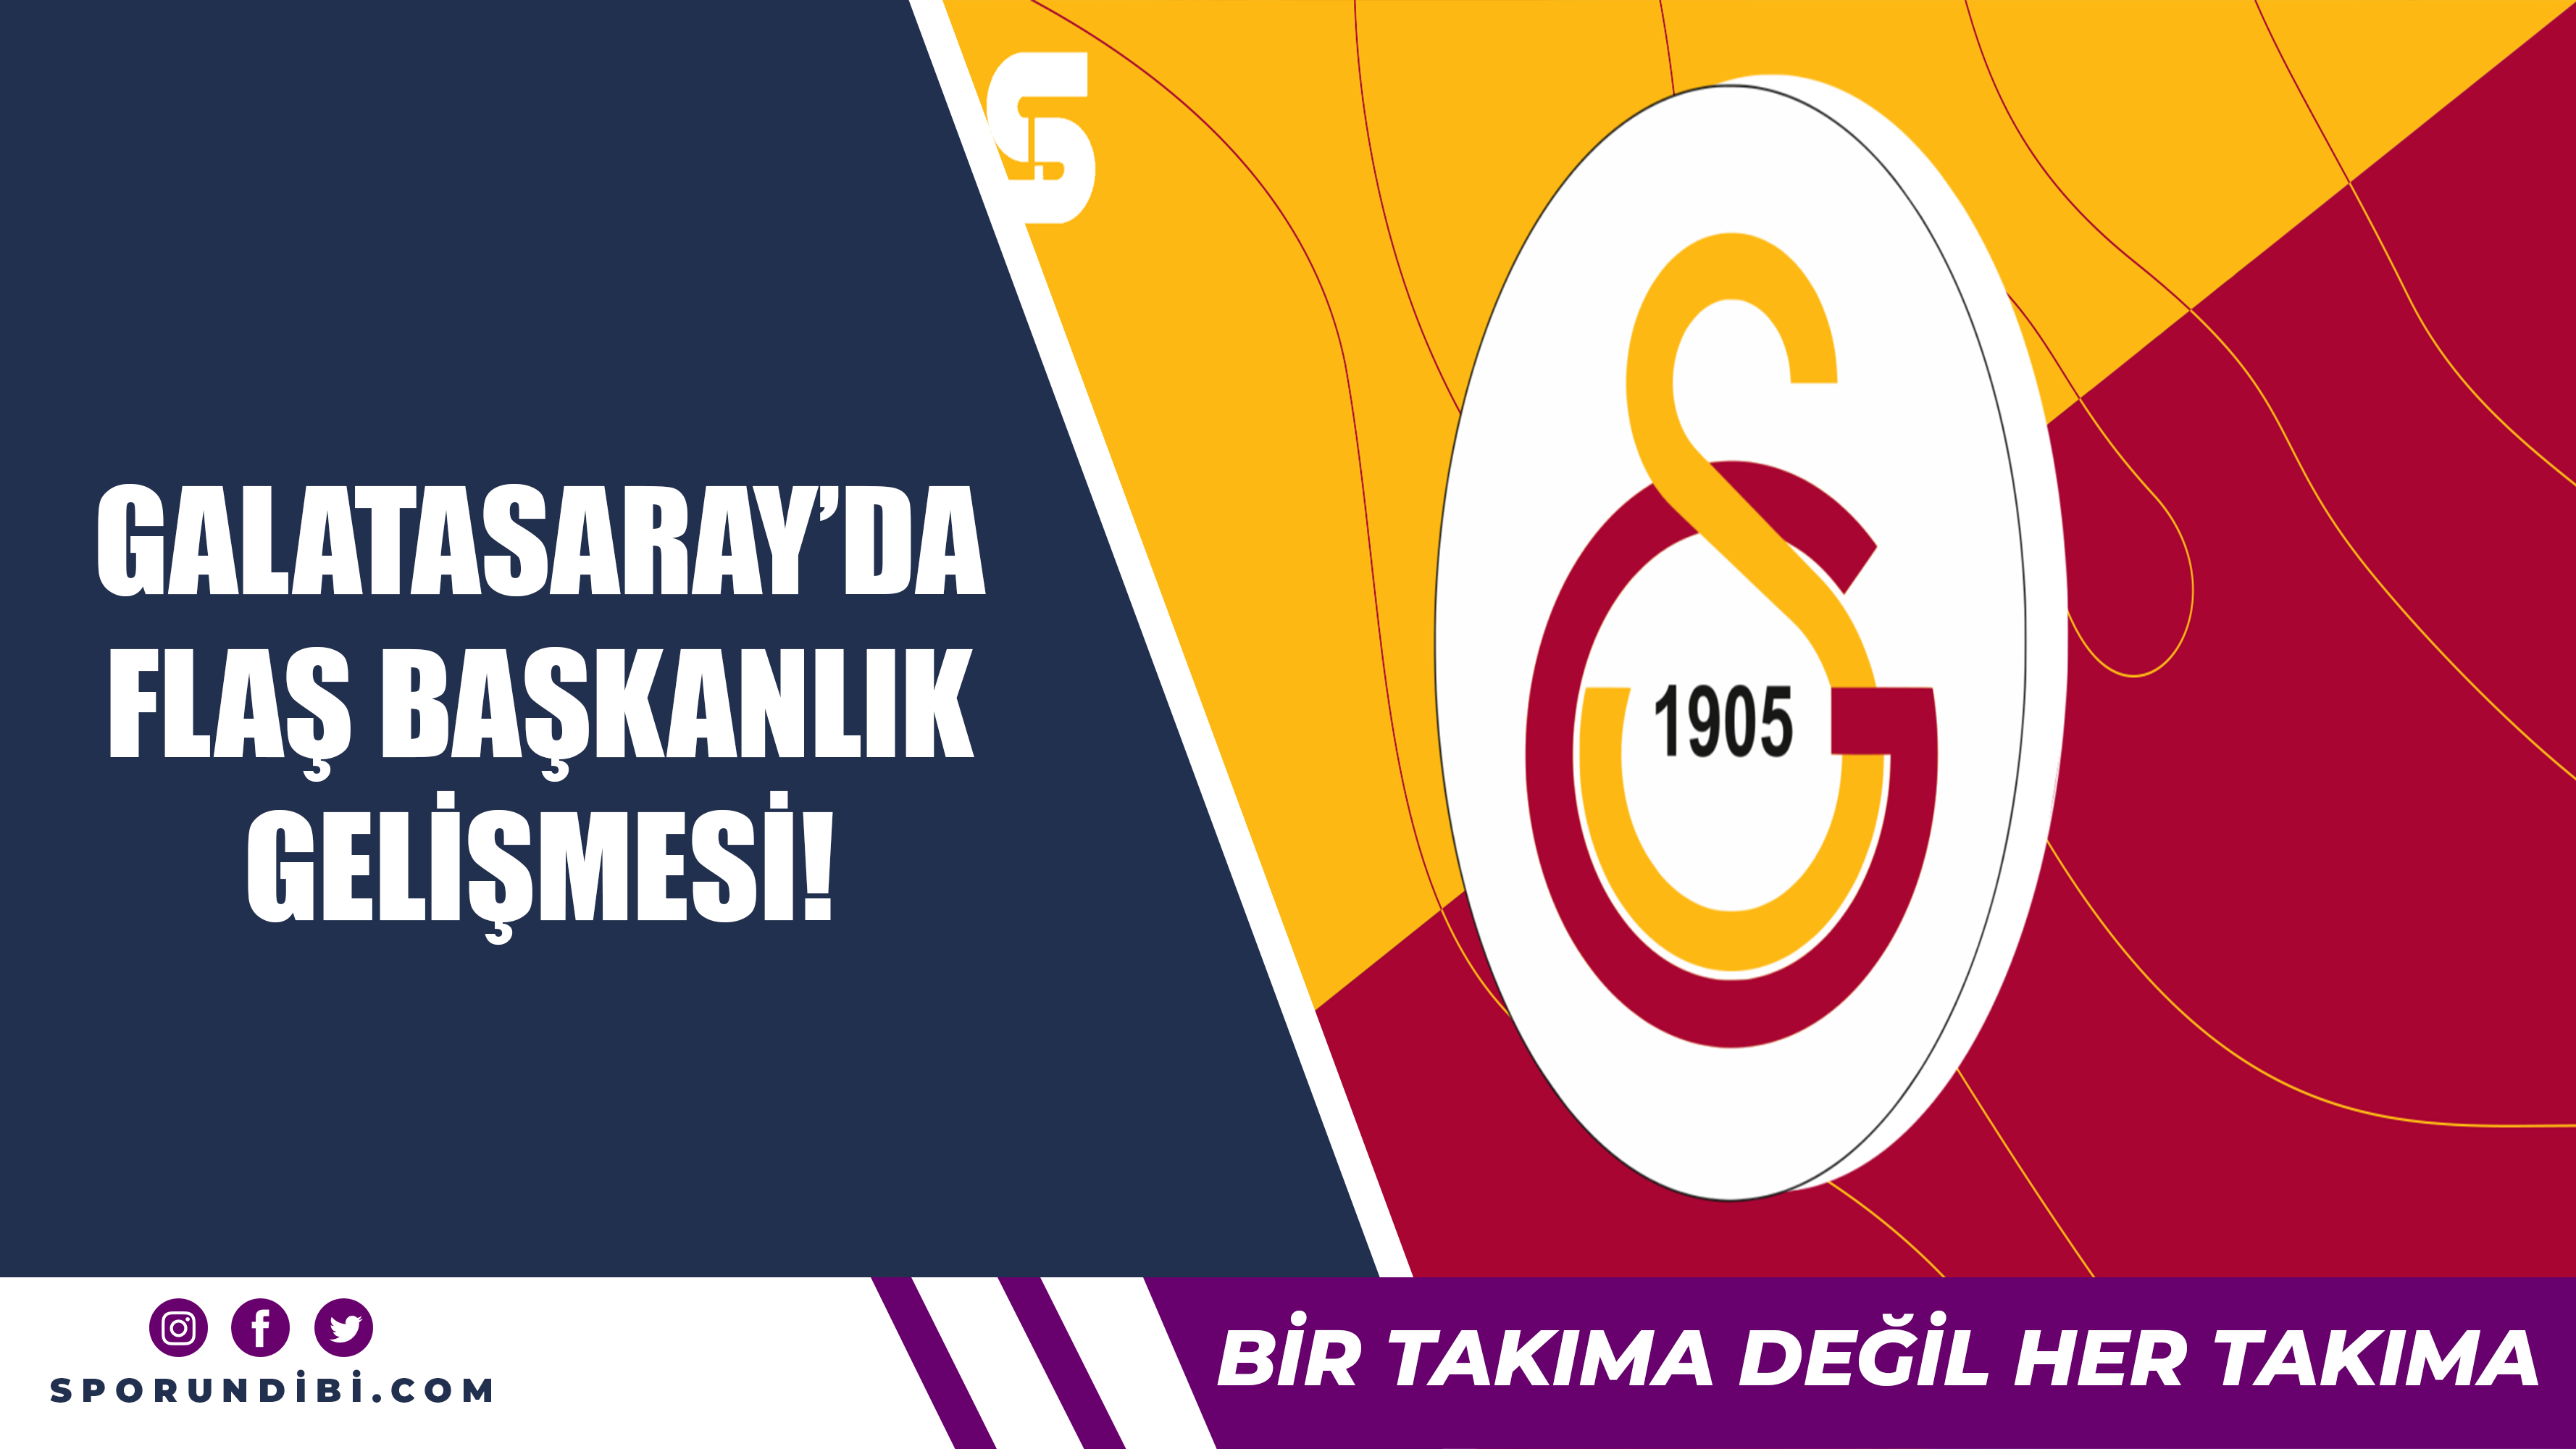 Galatasaray'da flaş başkanlık gelişmesi!